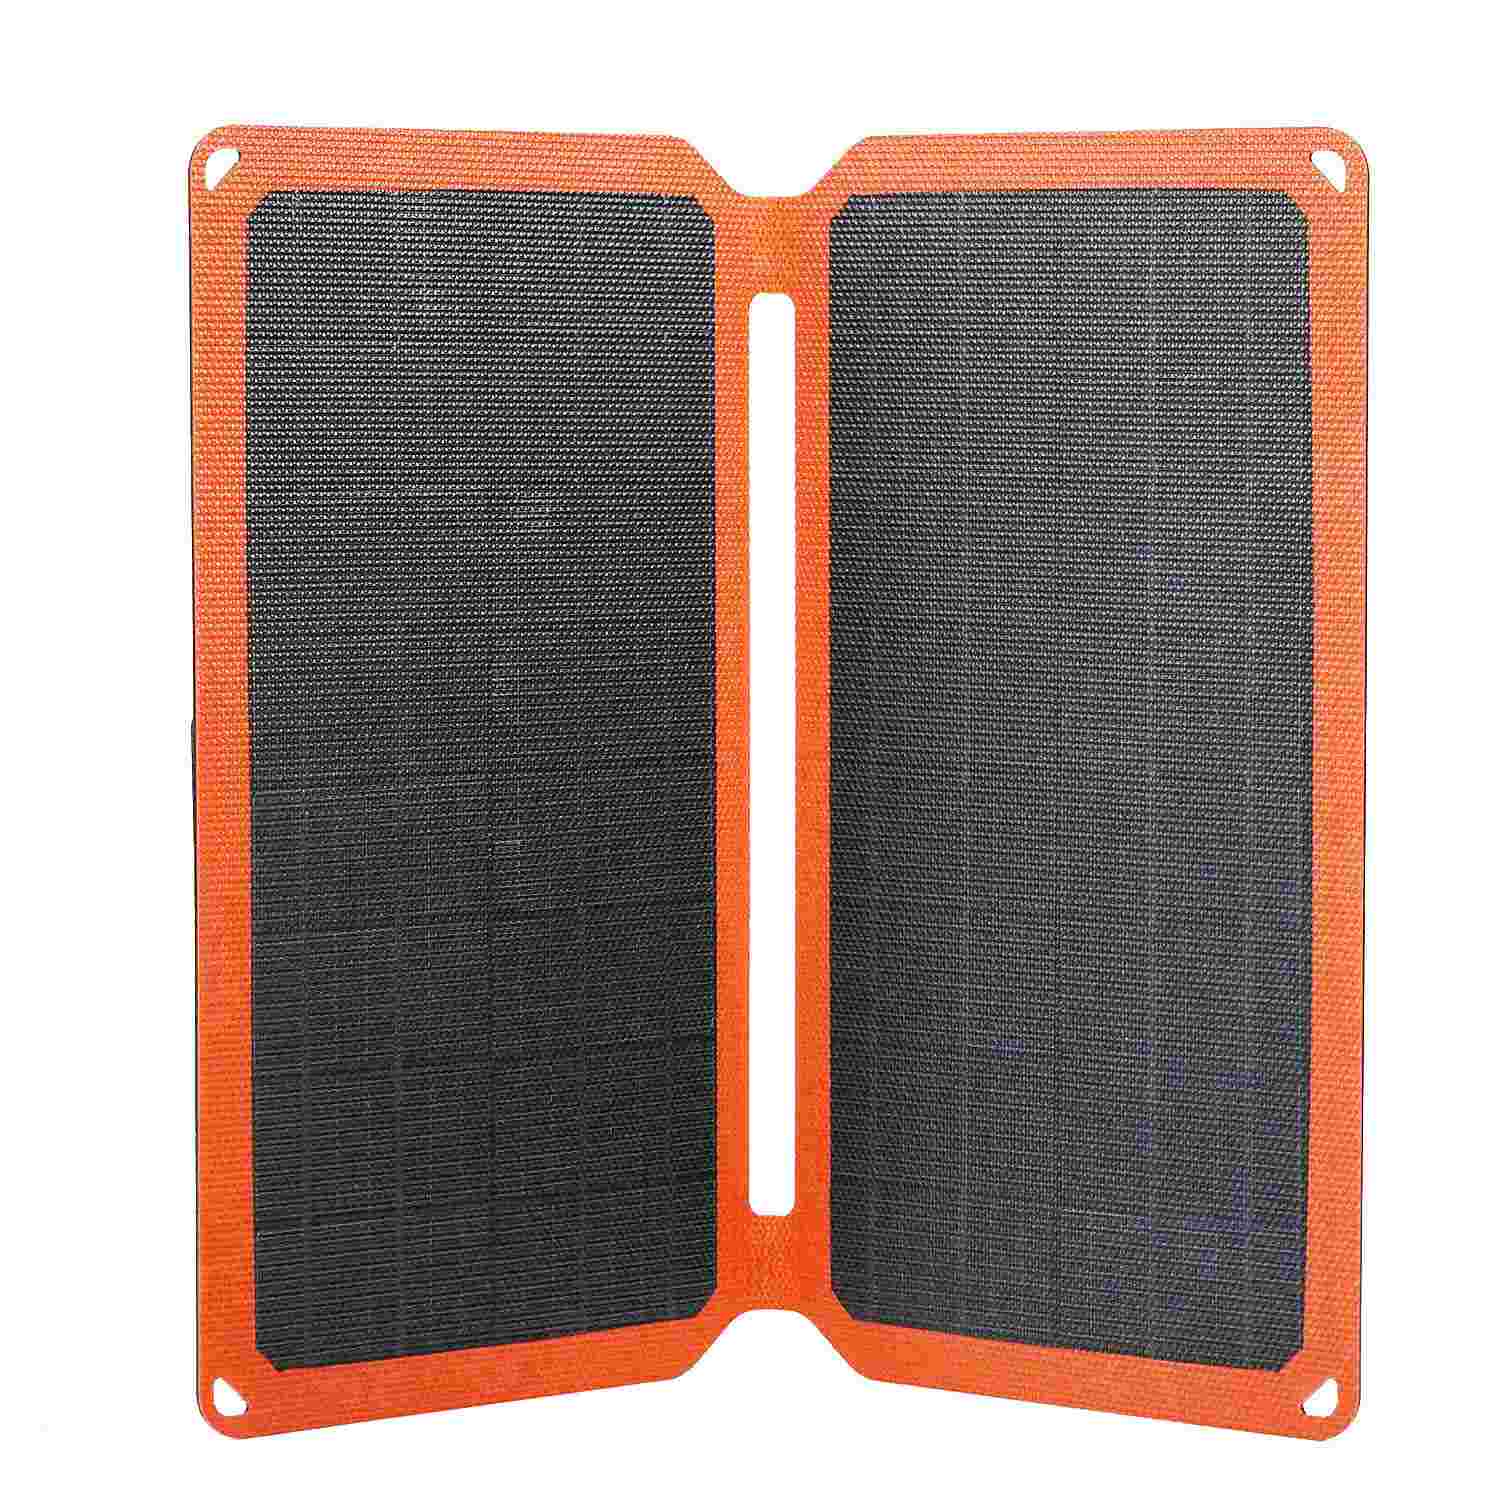 Mini pannello solare portatile da 20 W